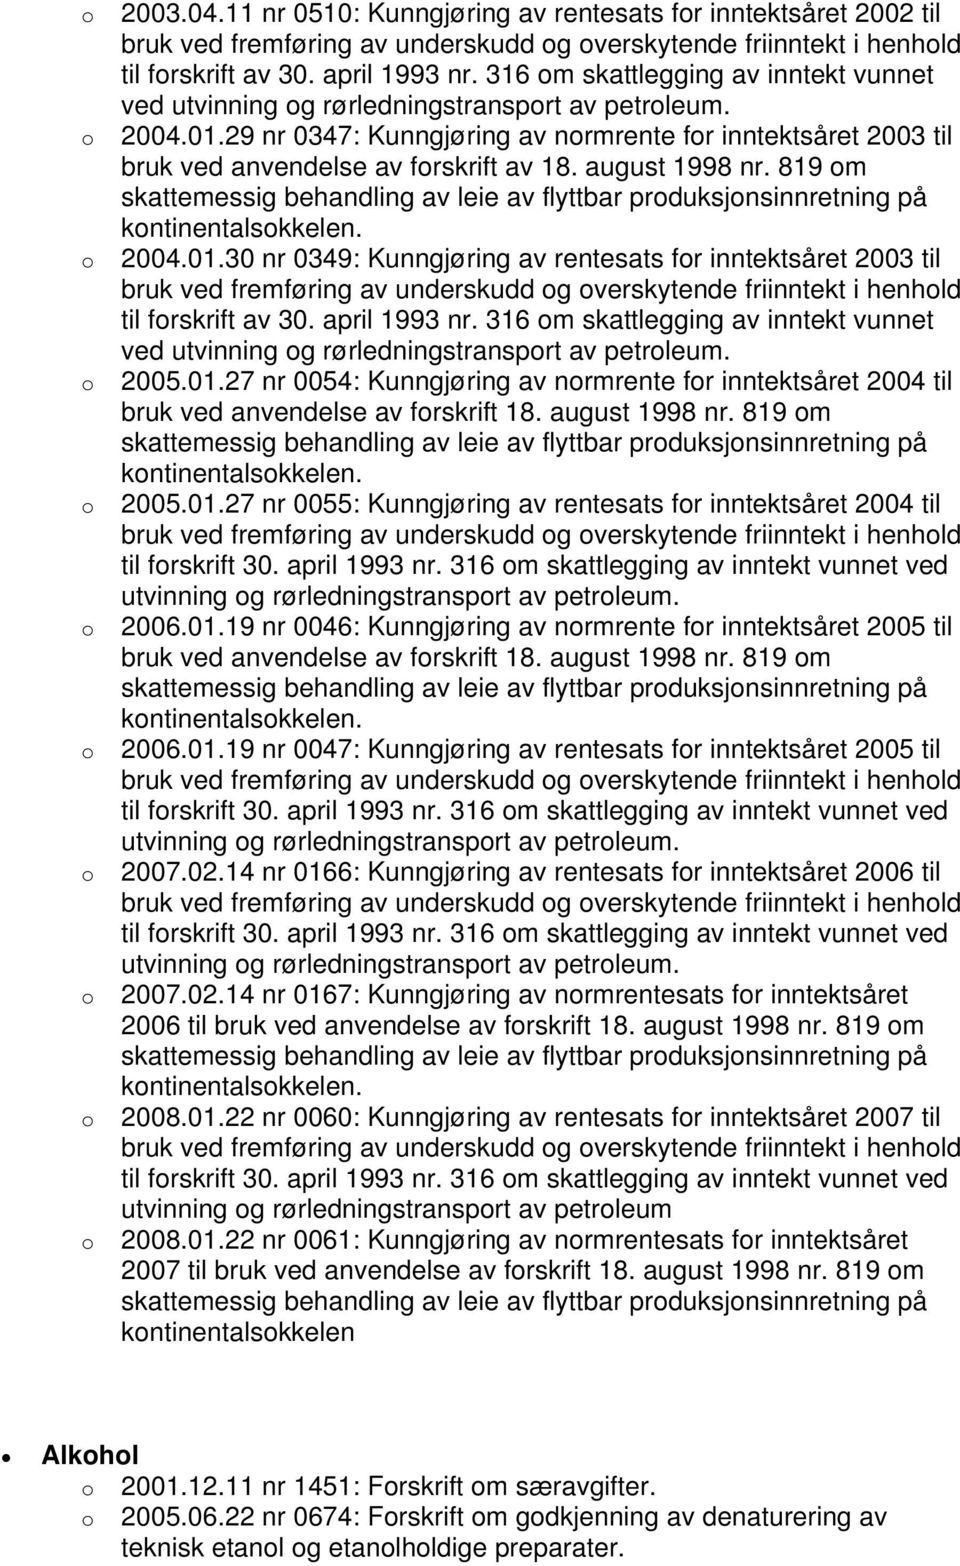 august 1998 nr. 819 m skattemessig behandling av leie av flyttbar prduksjnsinnretning på kntinentalskkelen. 2004.01.